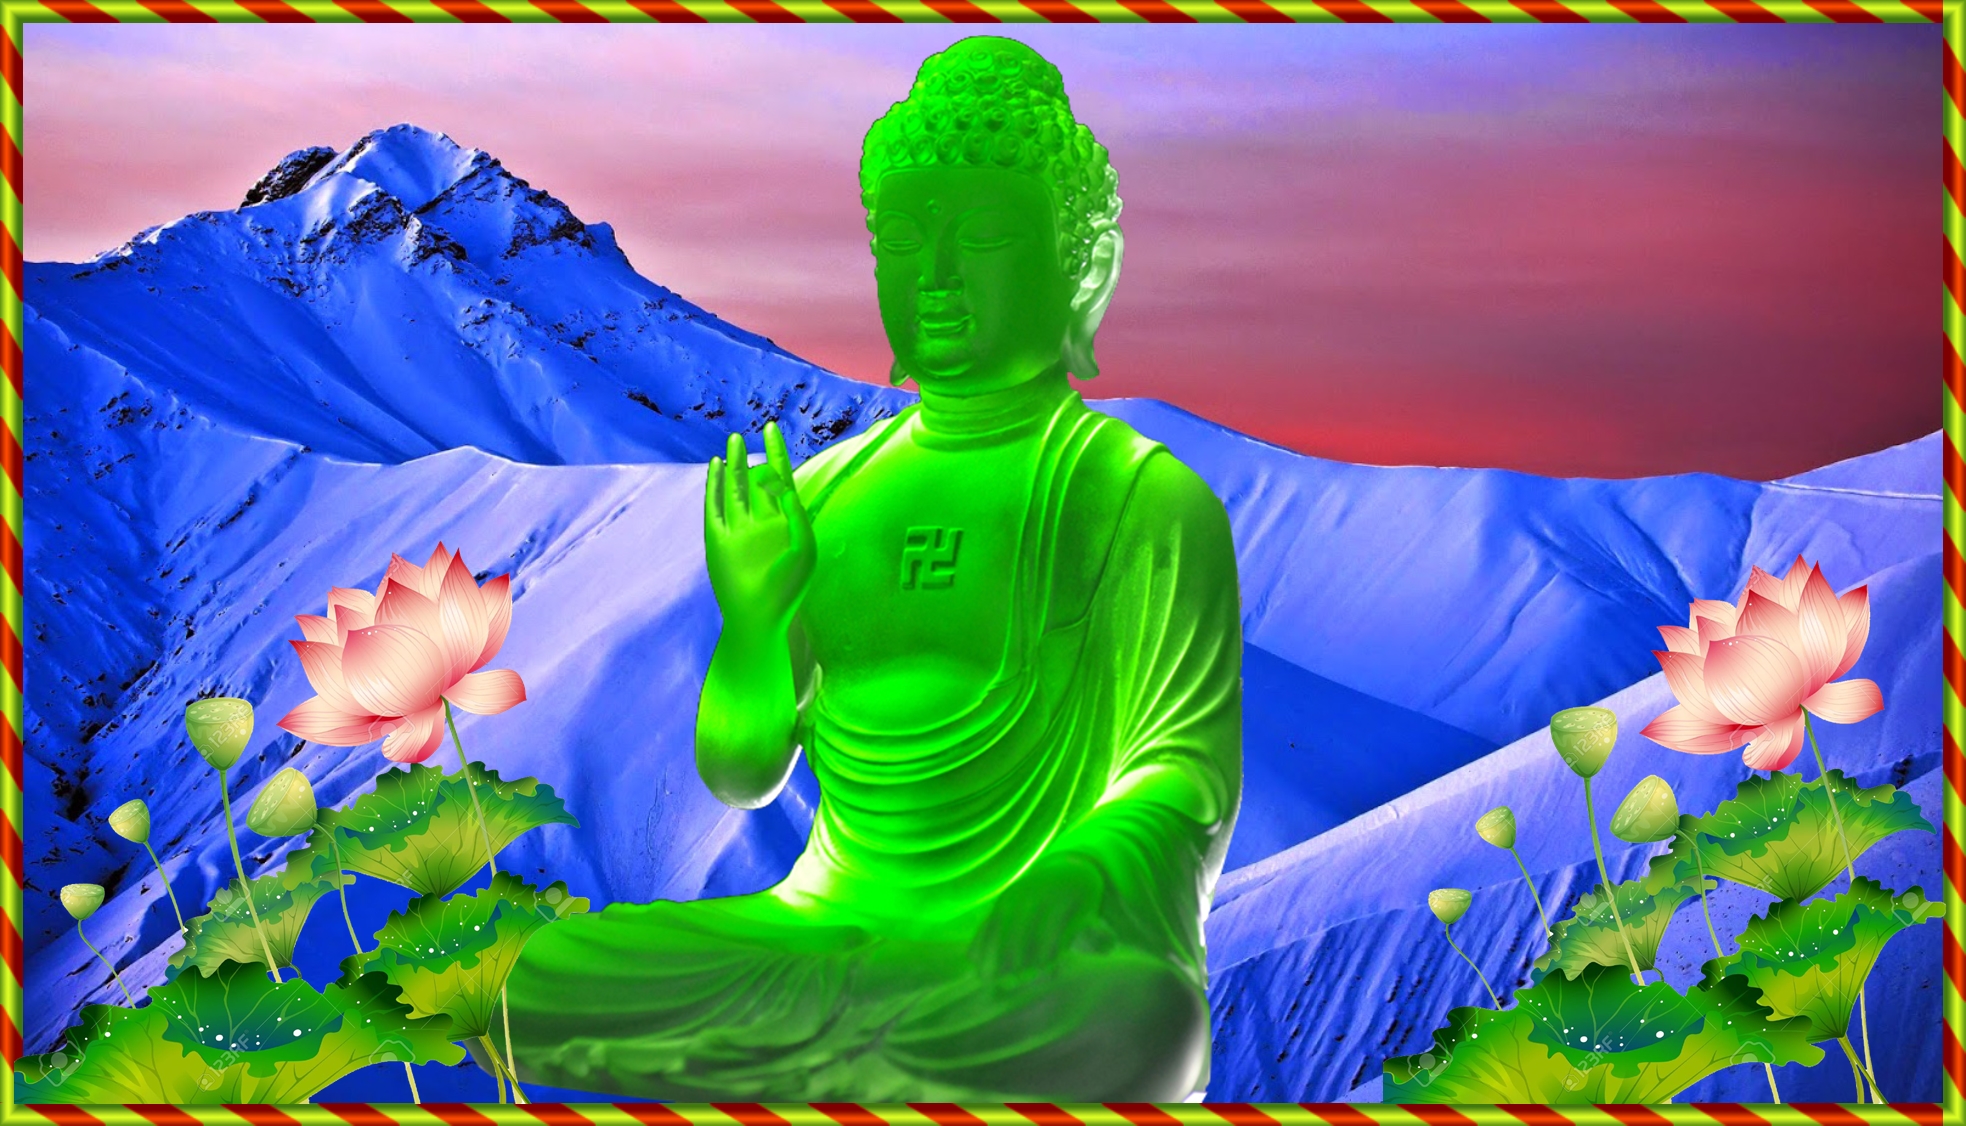 Hình nền Phật đẹp là một trong những cách tuyệt vời để trang trí màn hình điện thoại của bạn. Với những hình ảnh tuyệt đẹp về Phật giáo, bạn sẽ có được một màn hình đặc biệt và thiêng liêng, mang đến cảm giác an tâm và sự bình yên cho ngày mới.